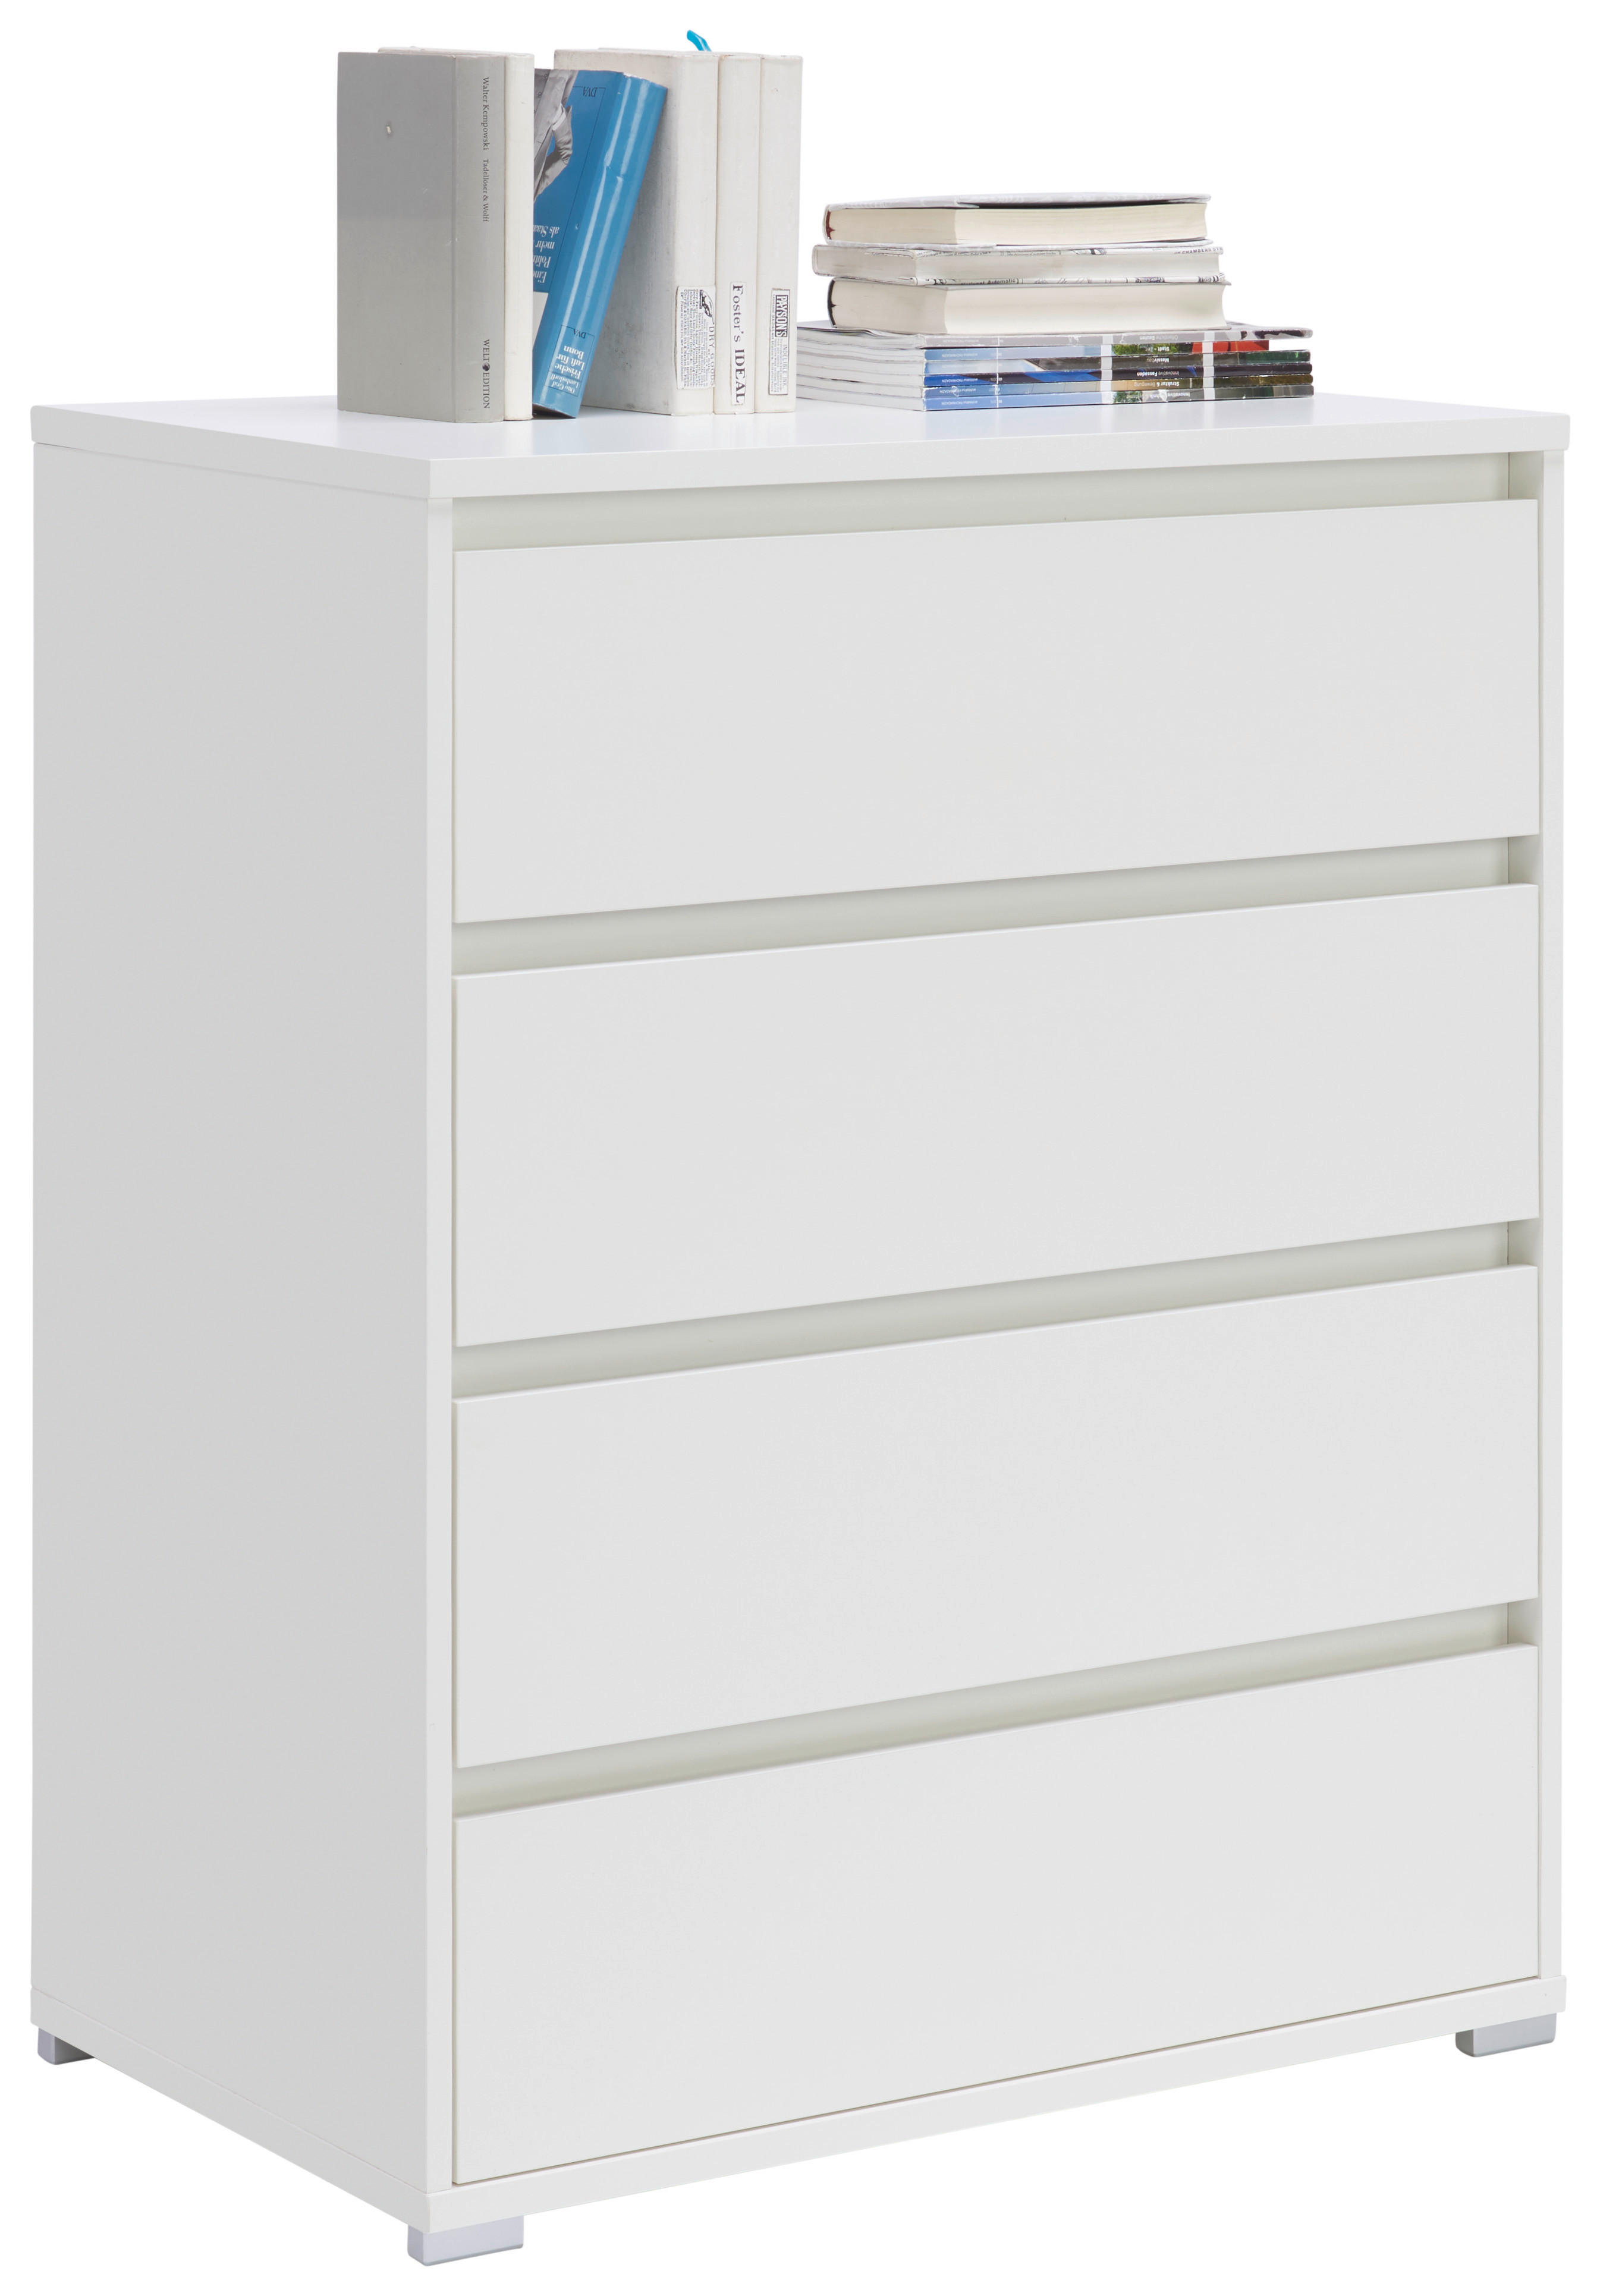 KOMMODE Weiß  - Silberfarben/Weiß, Design, Kunststoff (80/103/48cm) - Carryhome